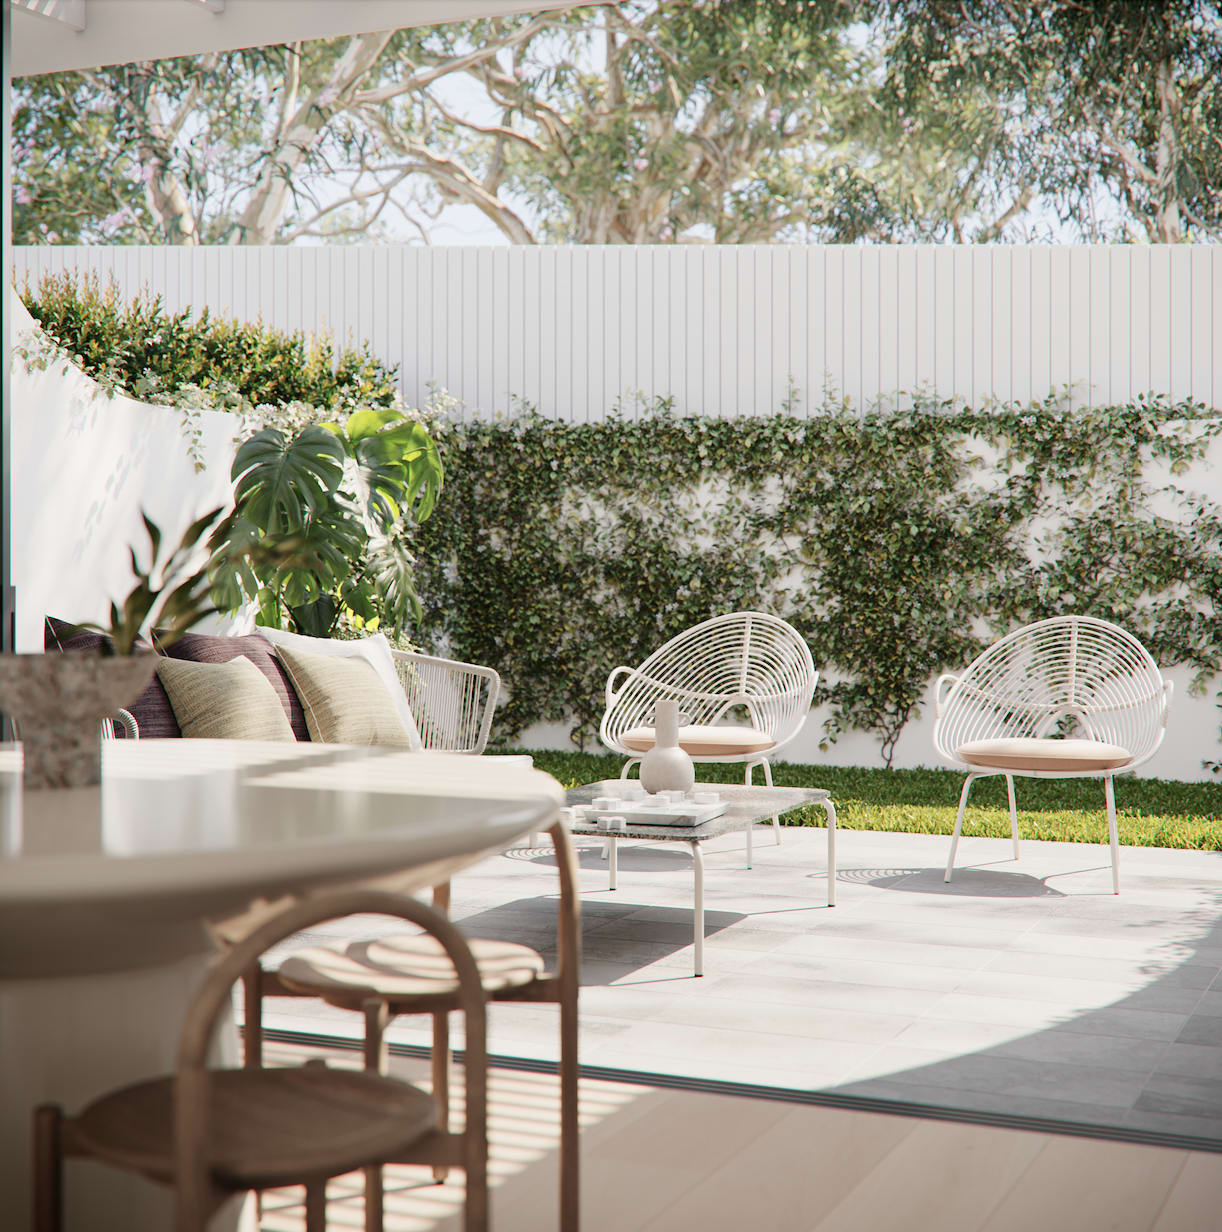 Pyco Group launch Queenslander-style Albion apartment development, Nouveau 